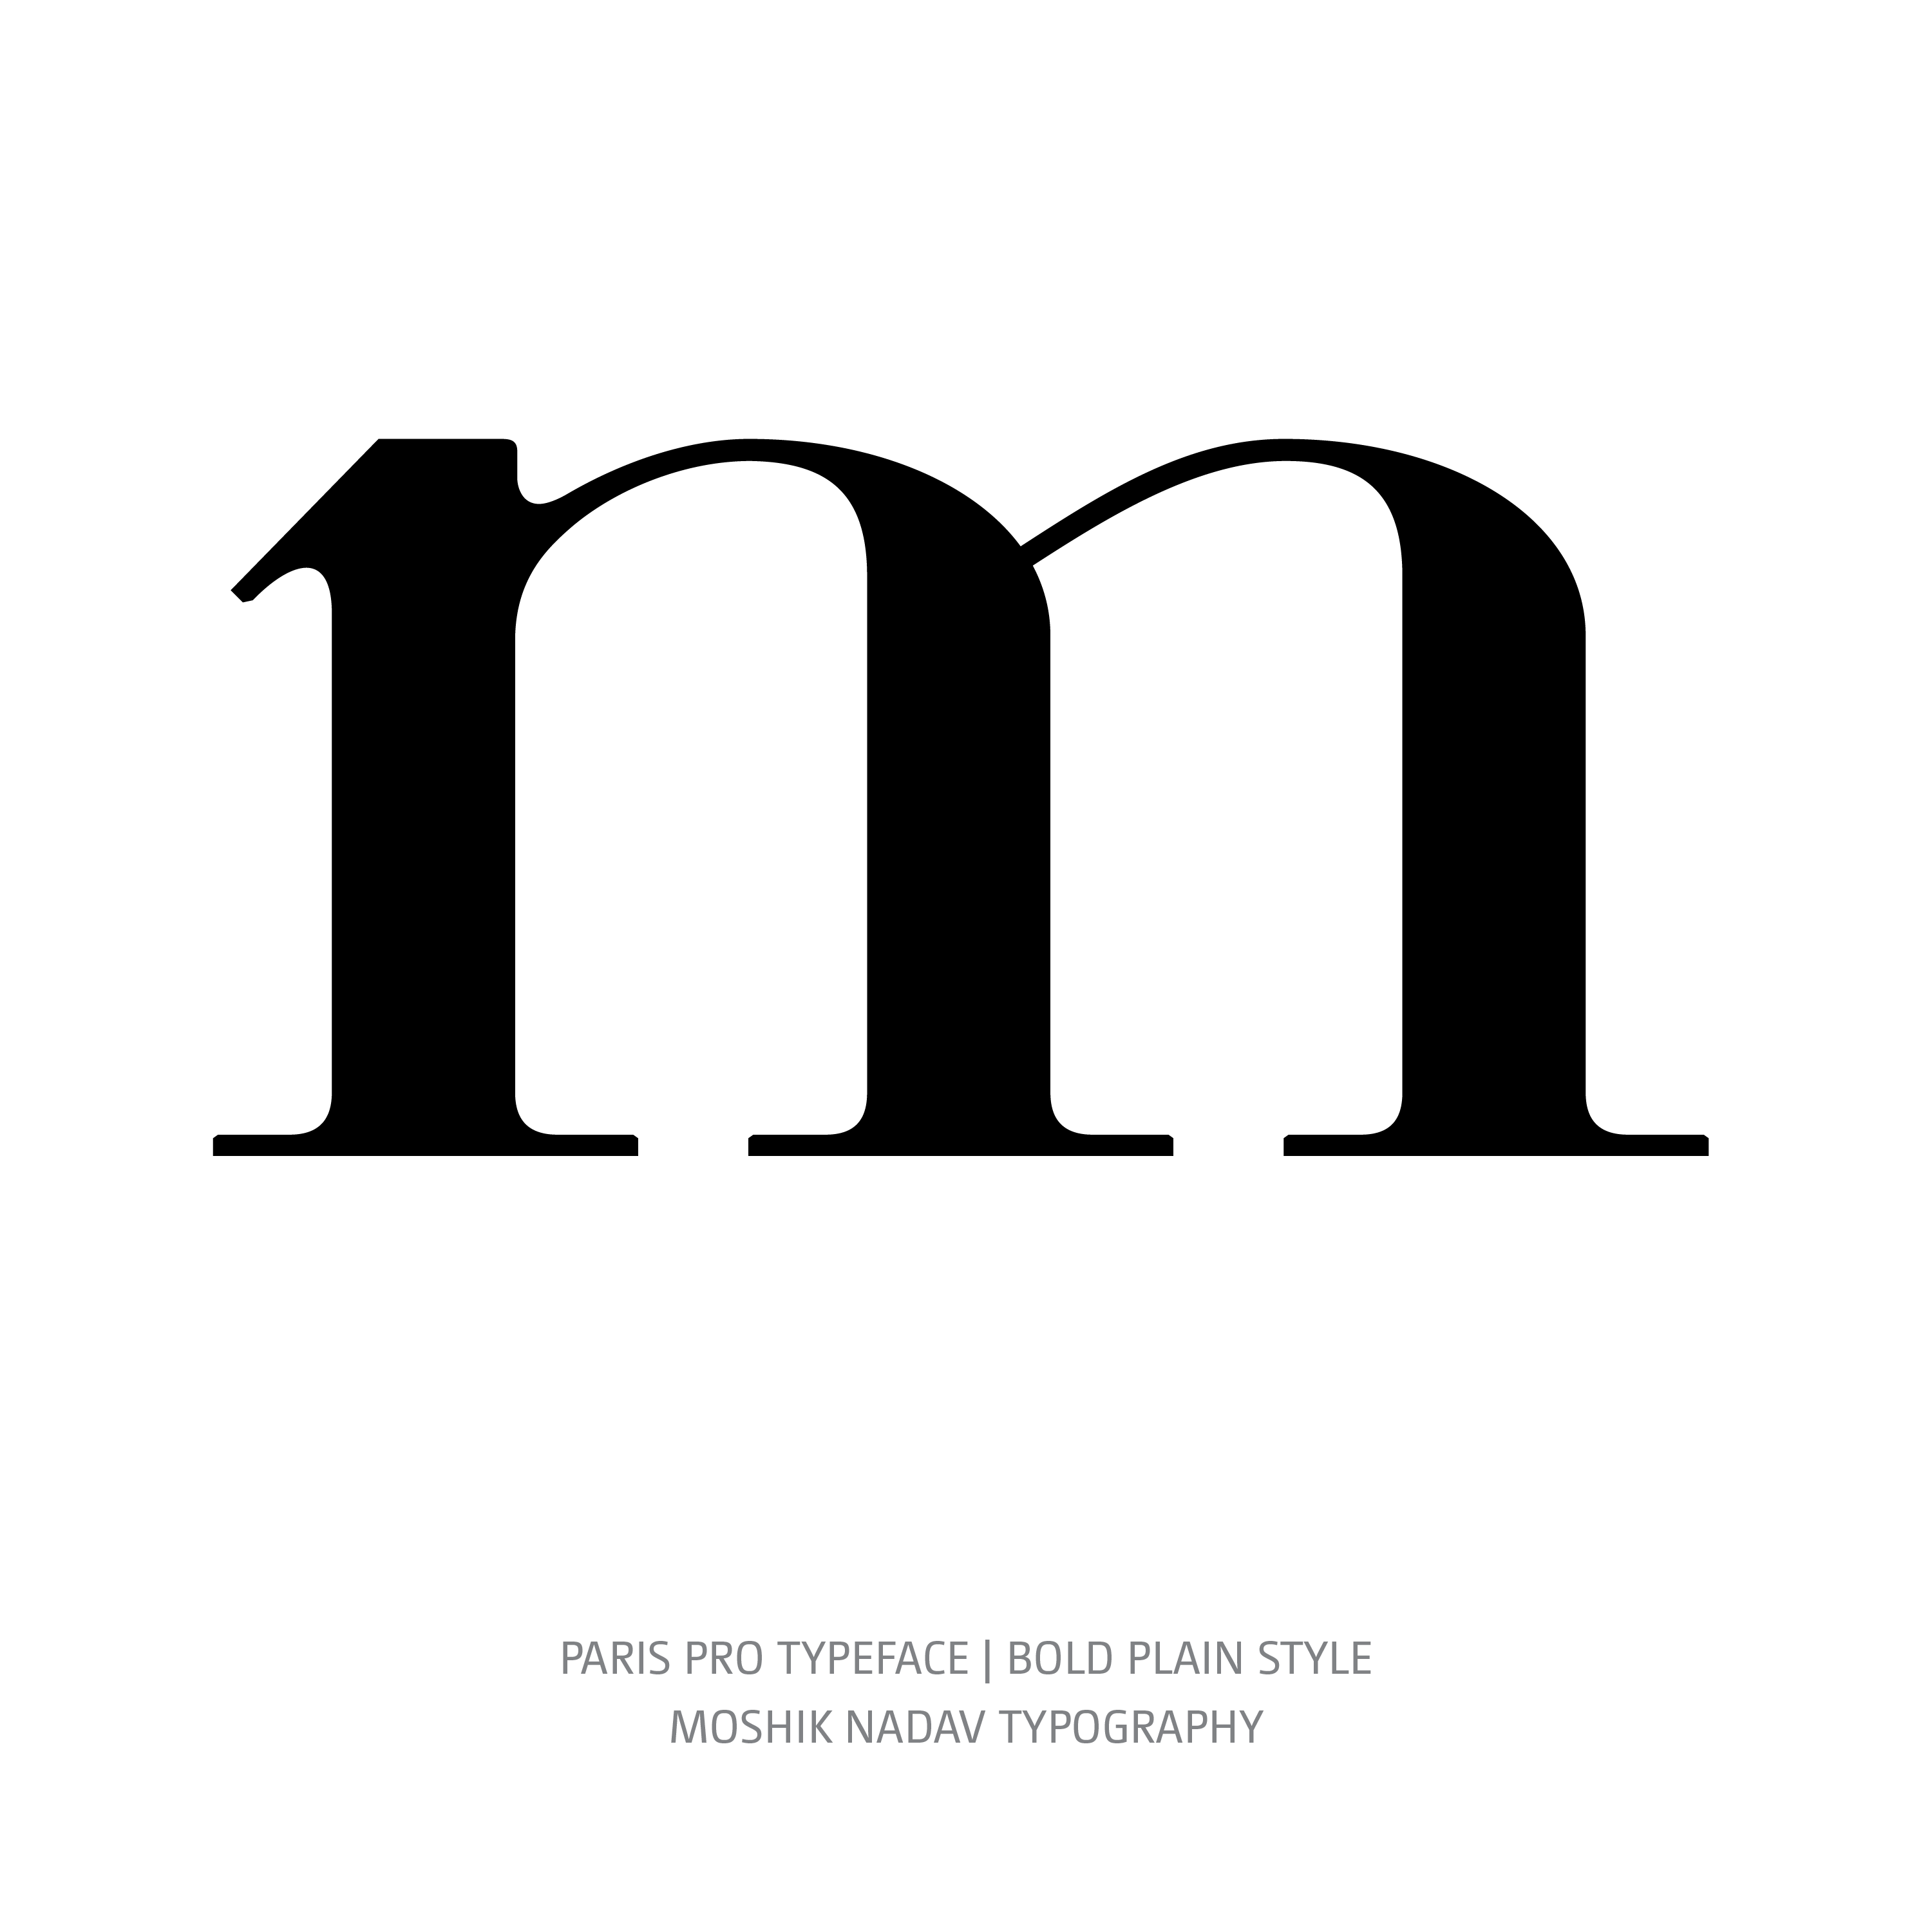 Paris Pro Typeface Bold Plain m